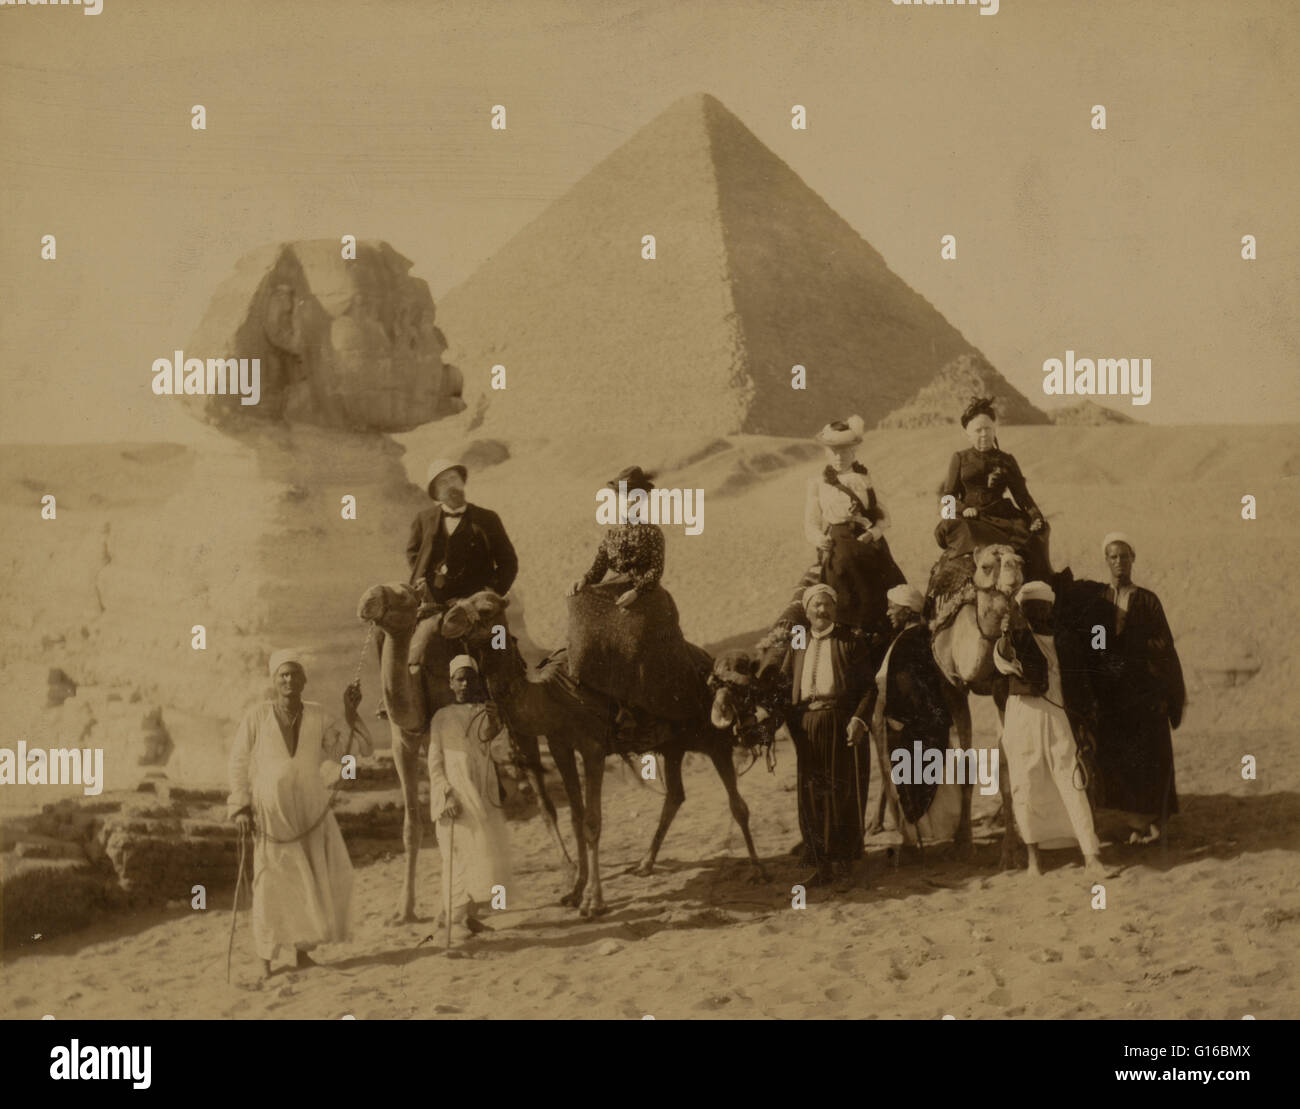 Unter dem Titel: "drei Frauen und ein Mann in der westlichen Kleidung, sitzen auf Kamelen, stehen mehrere einheimische Männer vor die Kamele, die Zügel, eine Pyramide und den Sphinx im Hintergrund". Die Nekropole von Gizeh (Pyramiden von Gizeh) ist eine archäologische Stätte auf dem Gizeh-Plateau Stockfoto